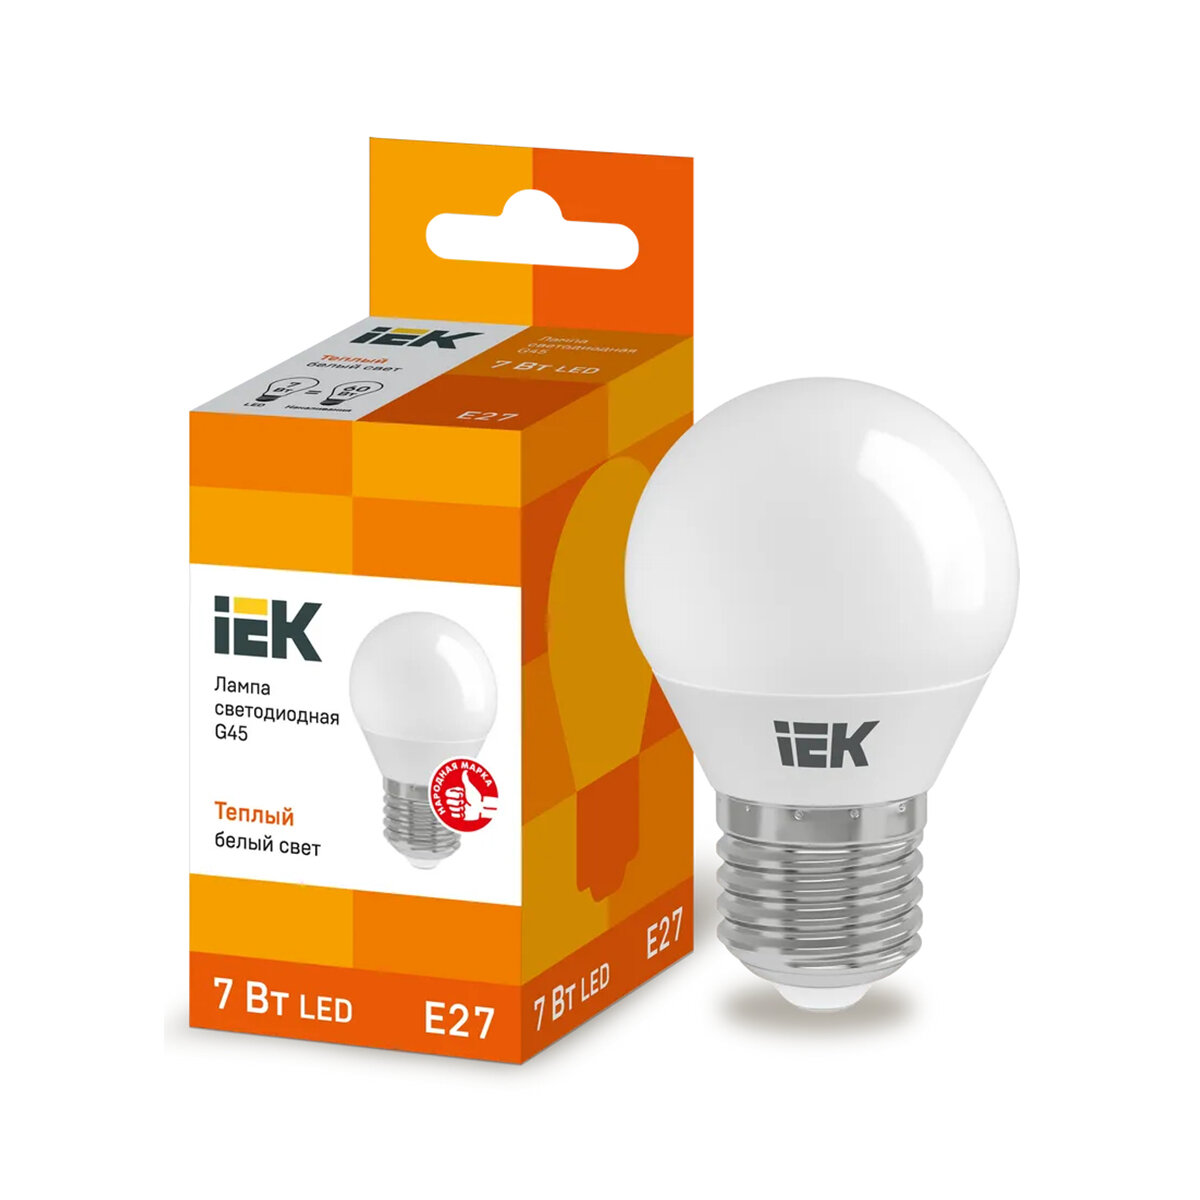 Лампа светодиодная LED IEK Шар, E27, G45, 7 Вт, 3000 K, теплый свет